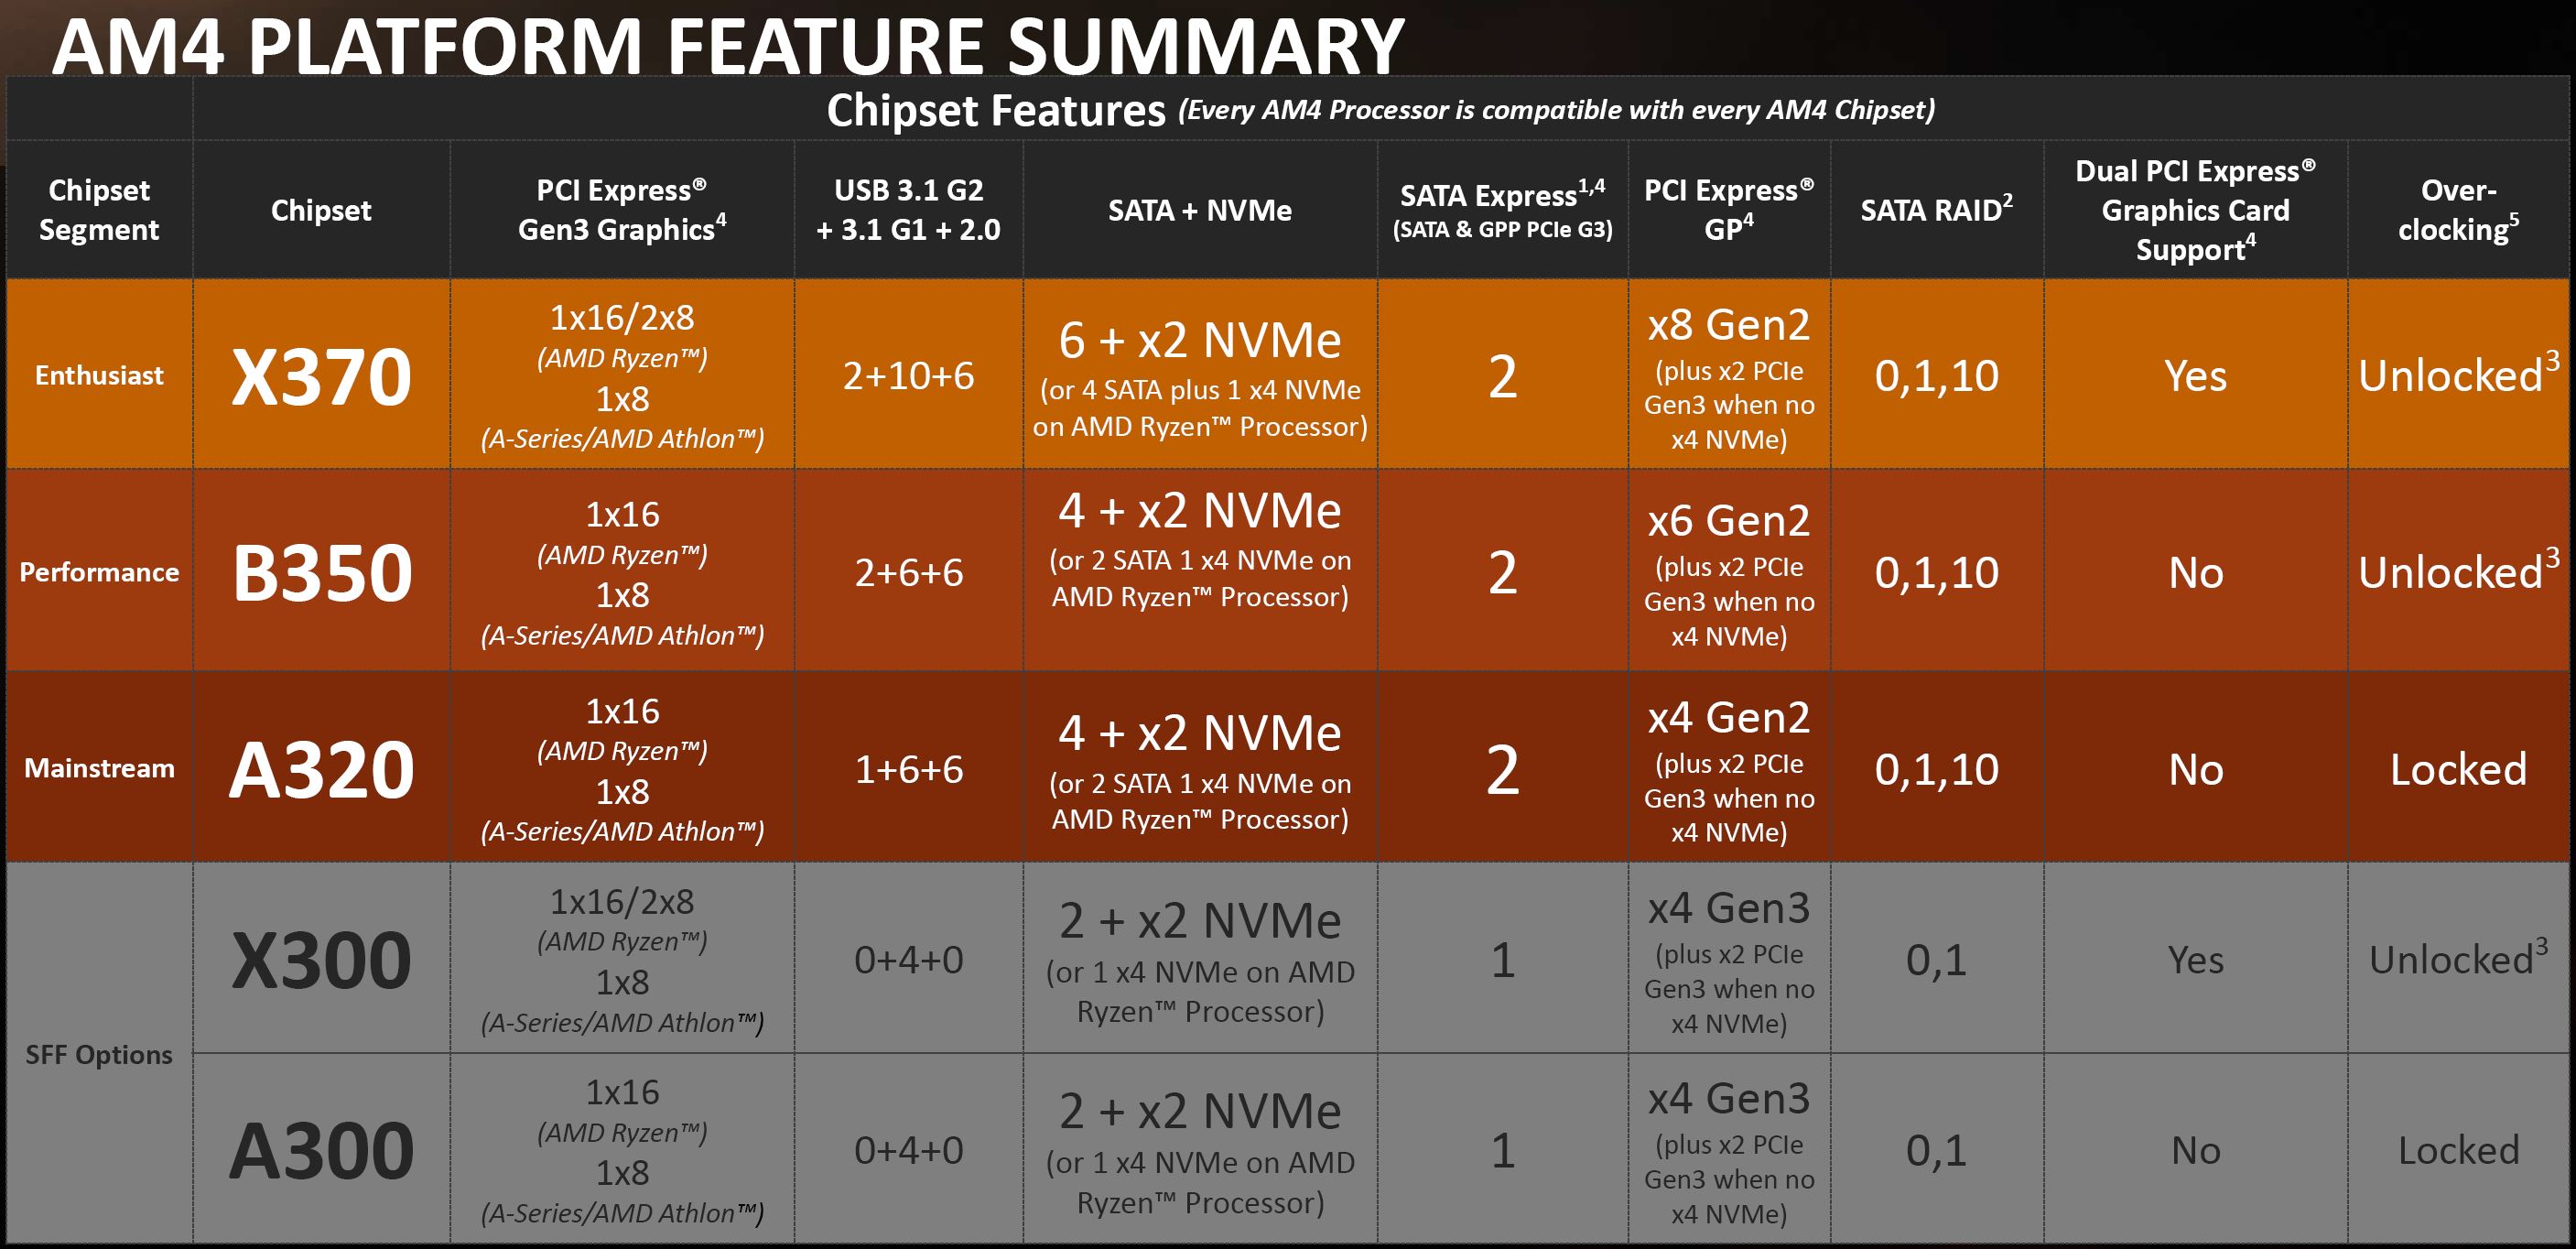 am4 platform AMD RYZEN 5 1500X Review